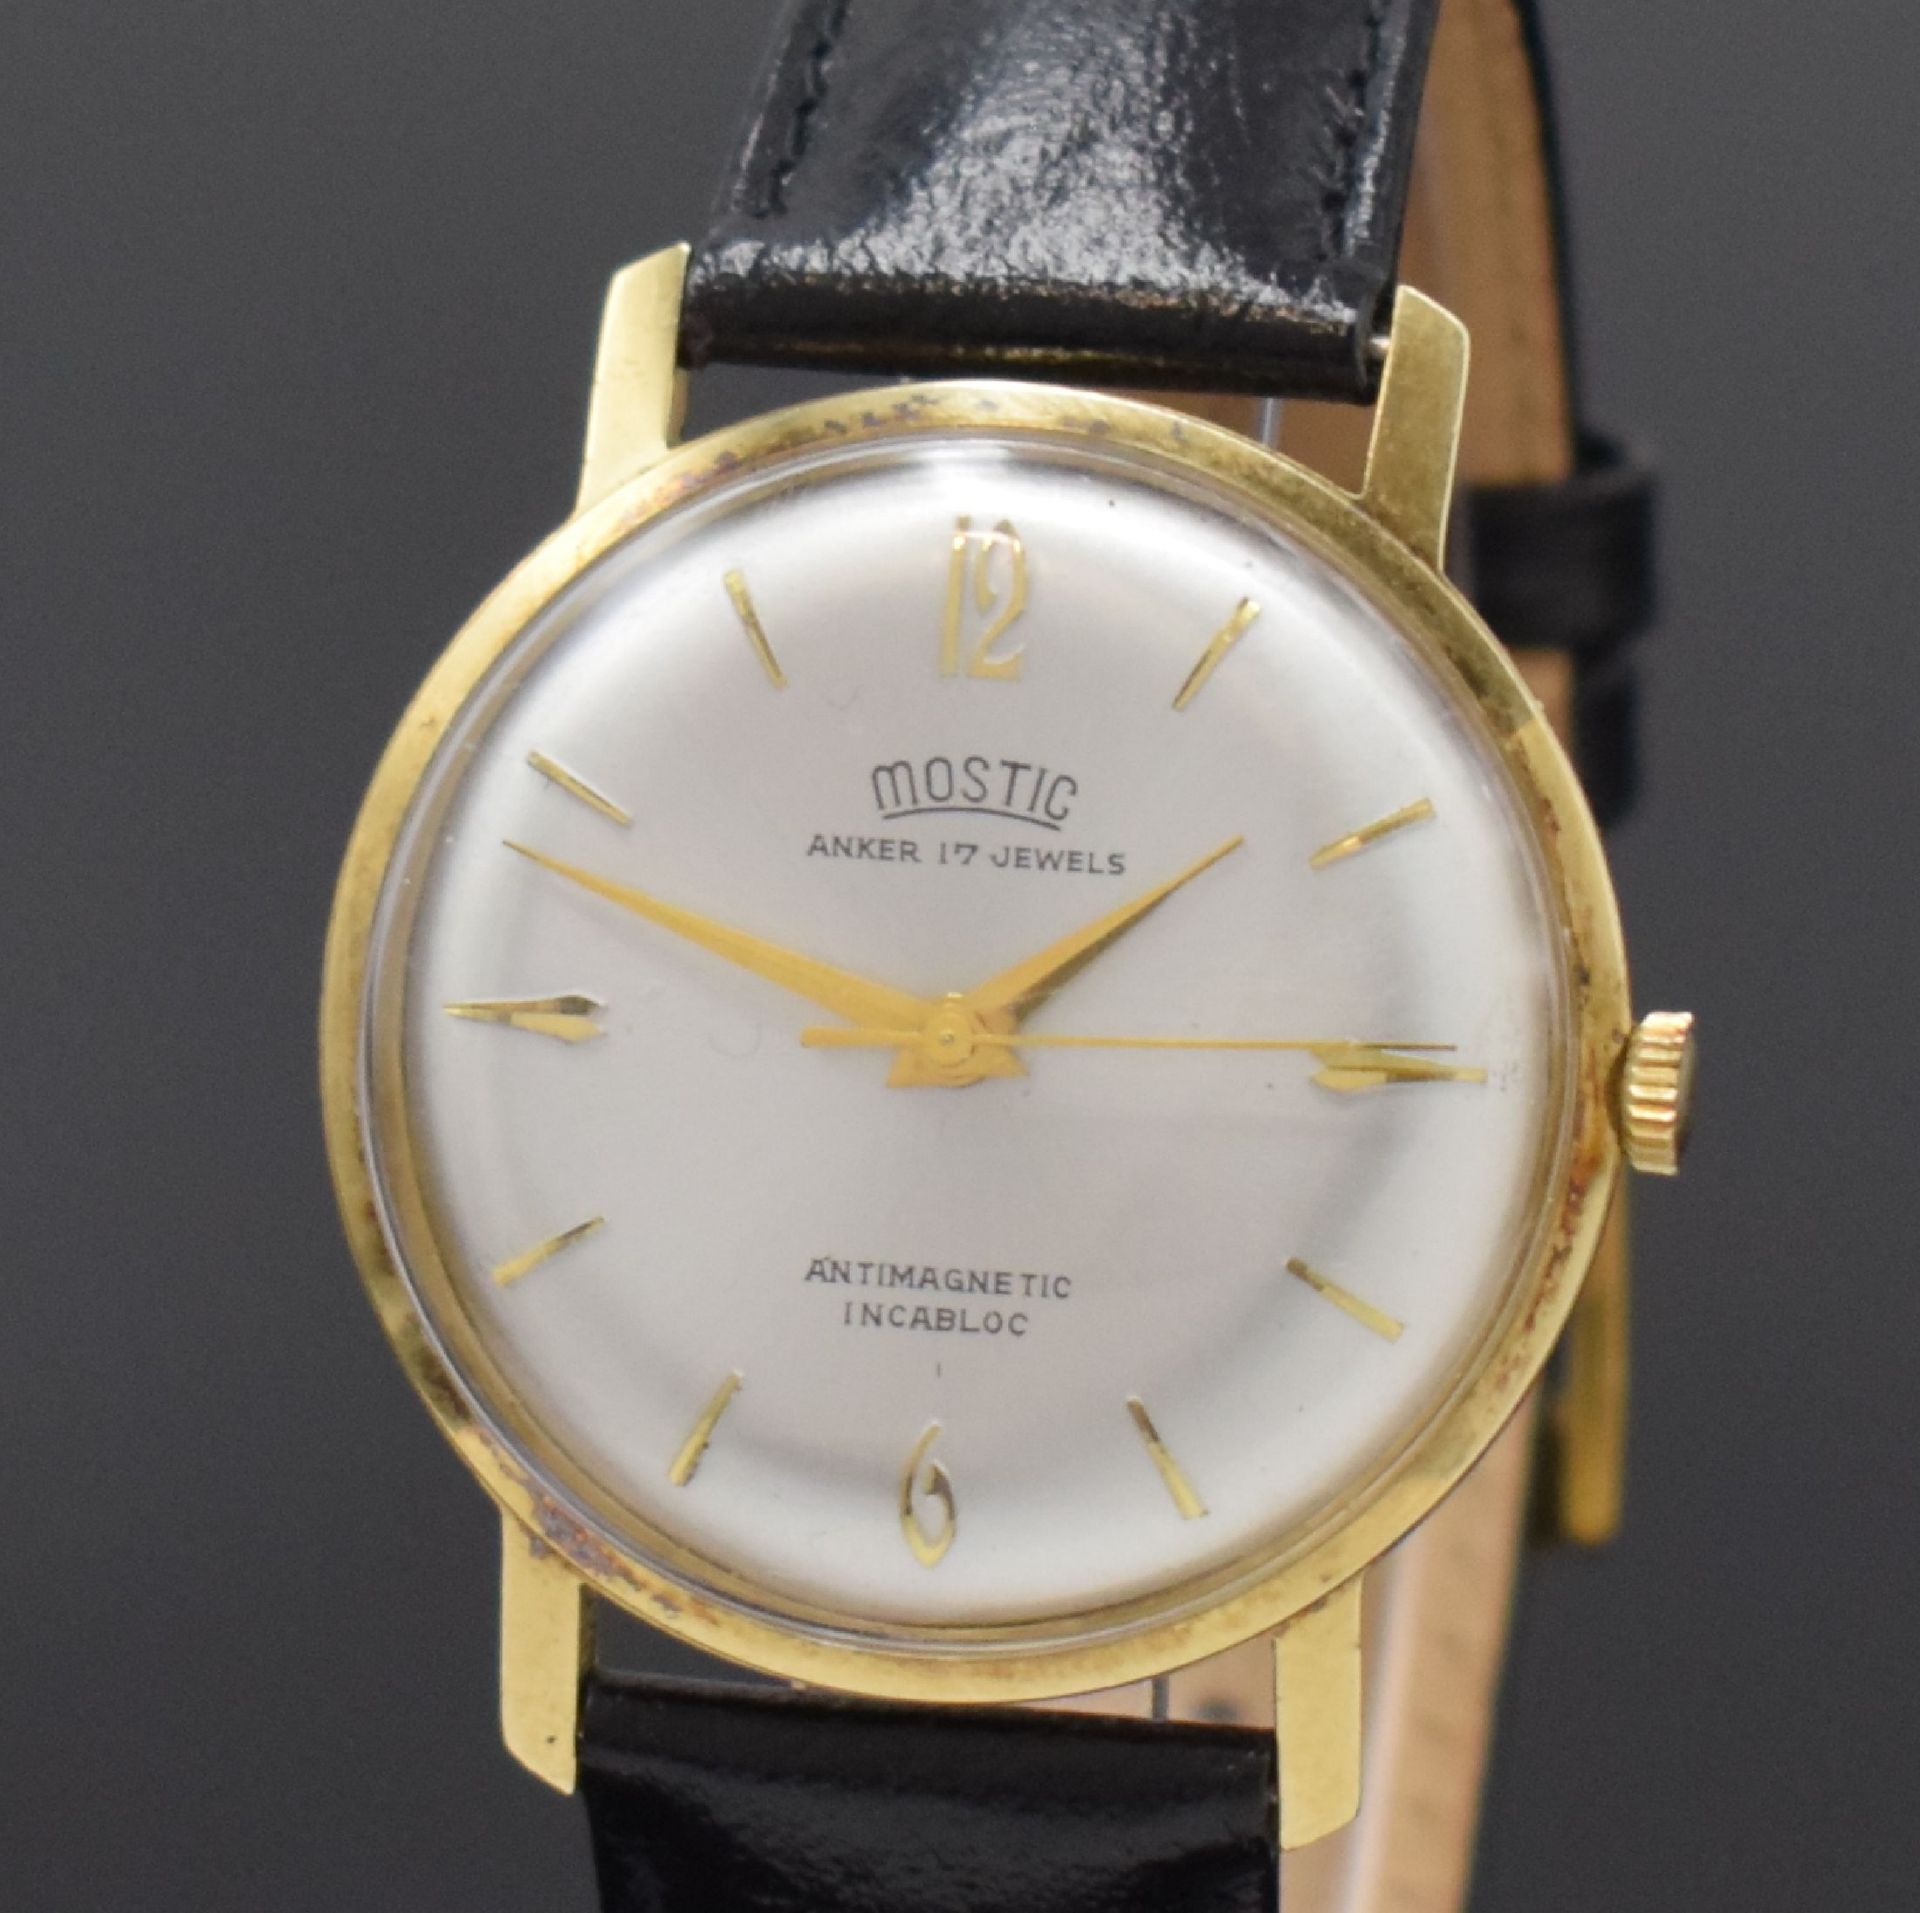 MOSTIC Armbanduhr in GG 585/000, Schweiz um 1965, - Bild 2 aus 5